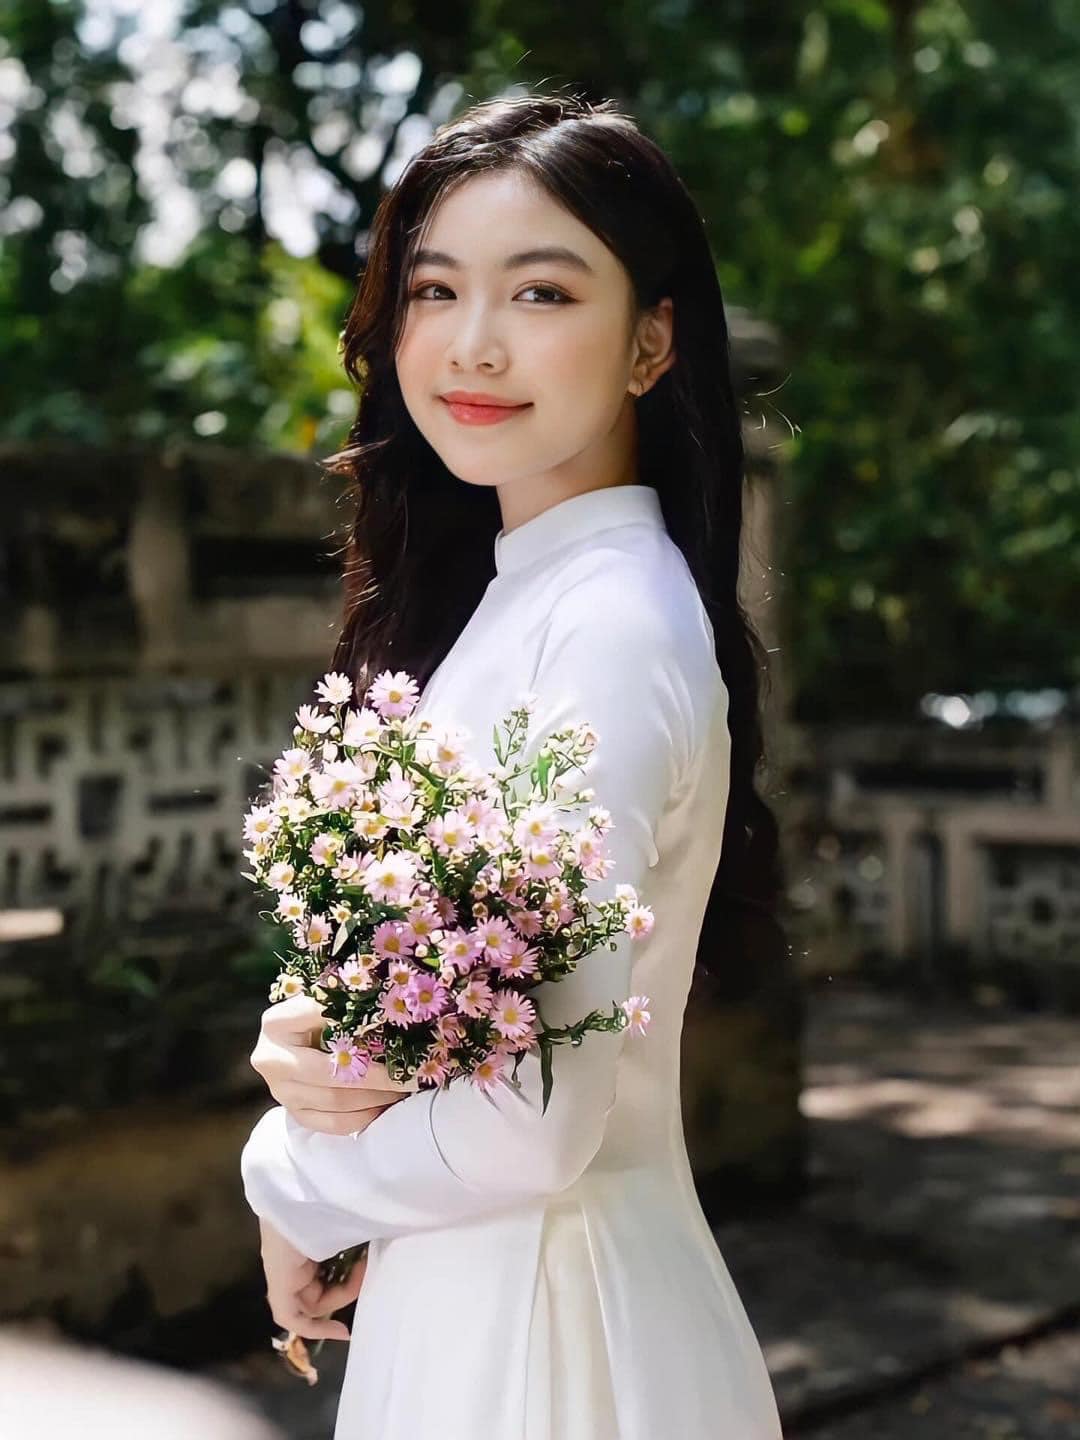 Hãy khám phá một vẻ đẹp đầy nữ tính và truyền thống của áo dài Việt Nam, khiến người ta luôn phải trầm trồ khi ngắm nhìn.